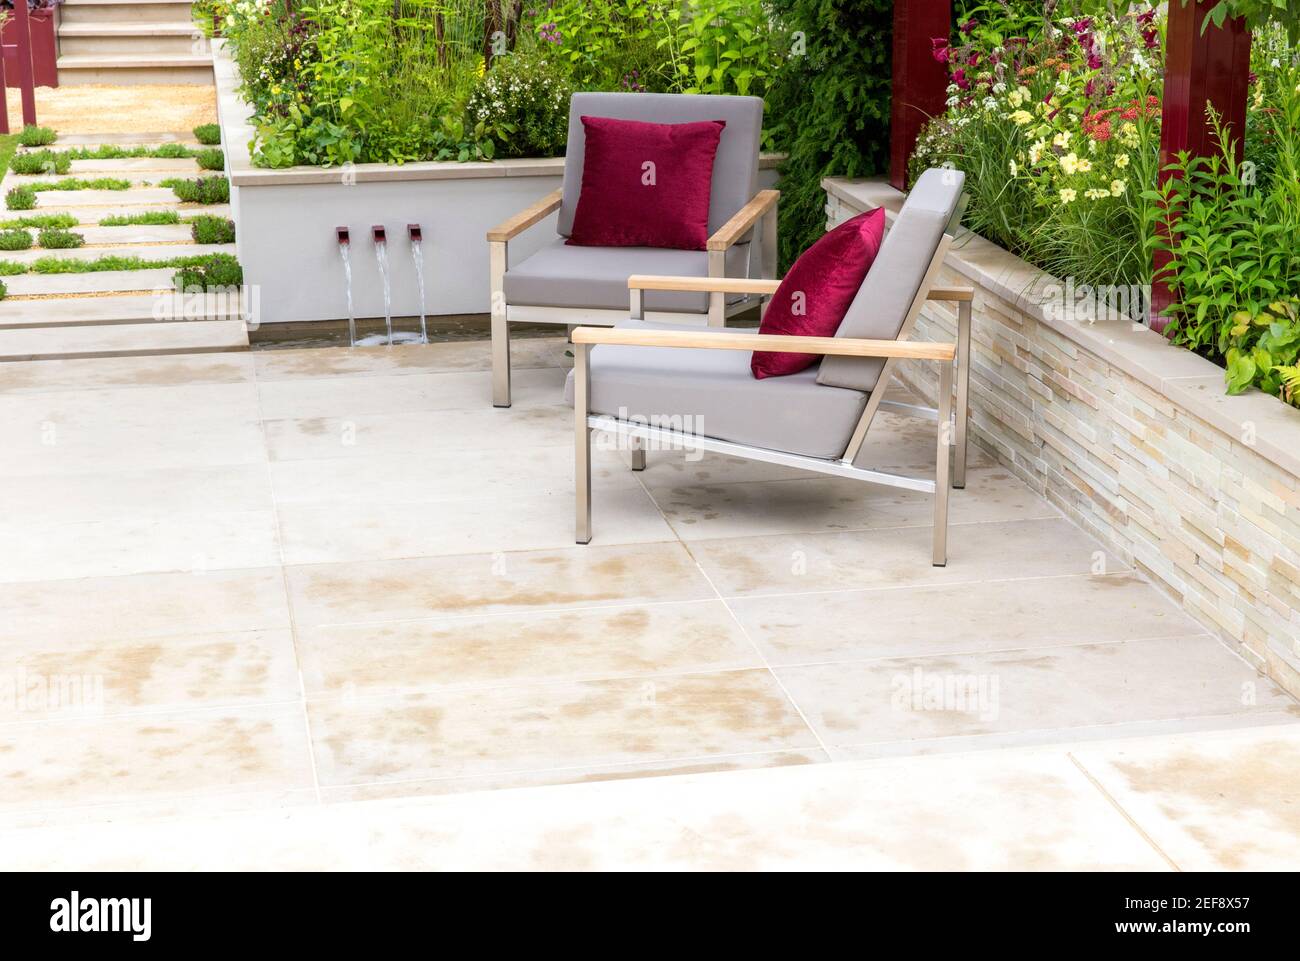 Moderno patio con giardino in pietra urbana e sedie con mobili da giardino Cuscini rossi - bordi del giardino del letto rialzato - Estate - Londra UK Inghilterra Foto Stock